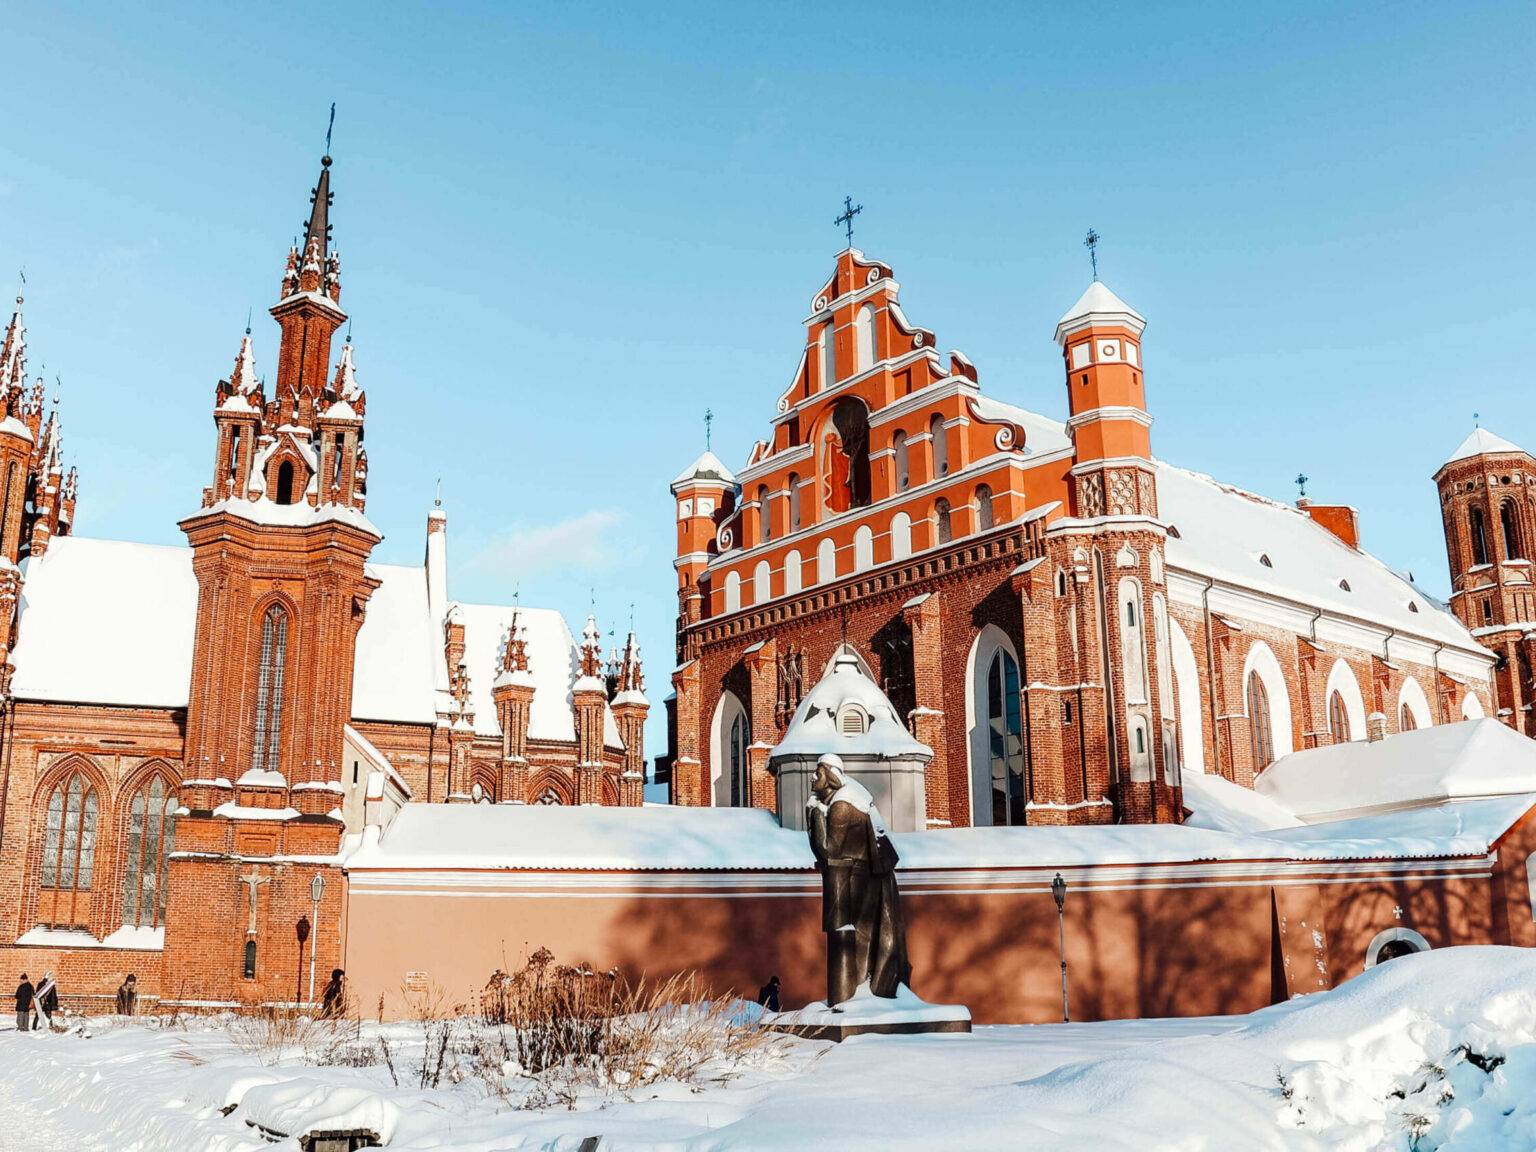 Die backsteinfarbene Kirche St. Anna in Vilnius im Winter mit Schnee bedeckt.